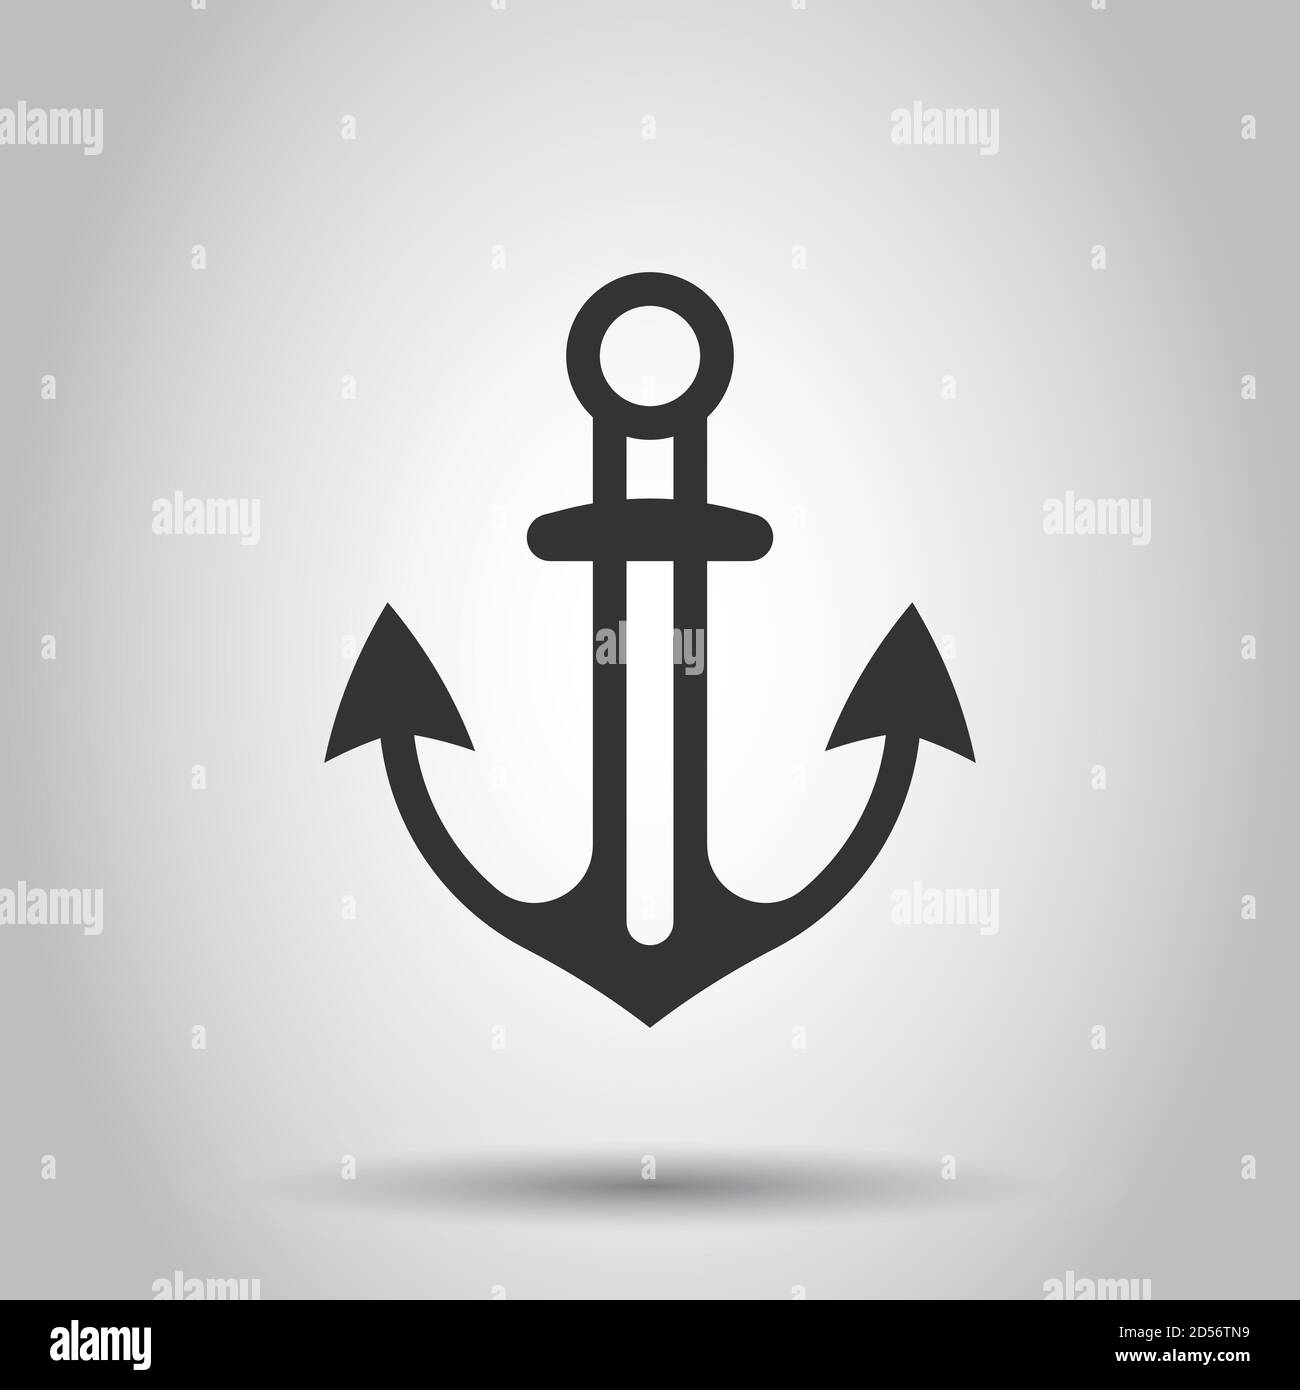 https://c8.alamy.com/compes/2d56tn9/icono-de-ancla-de-barco-en-estilo-plano-gancho-de-buque-ilustracion-vectorial-sobre-fondo-blanco-aisladas-equipamiento-del-barco-el-concepto-empresarial-2d56tn9.jpg